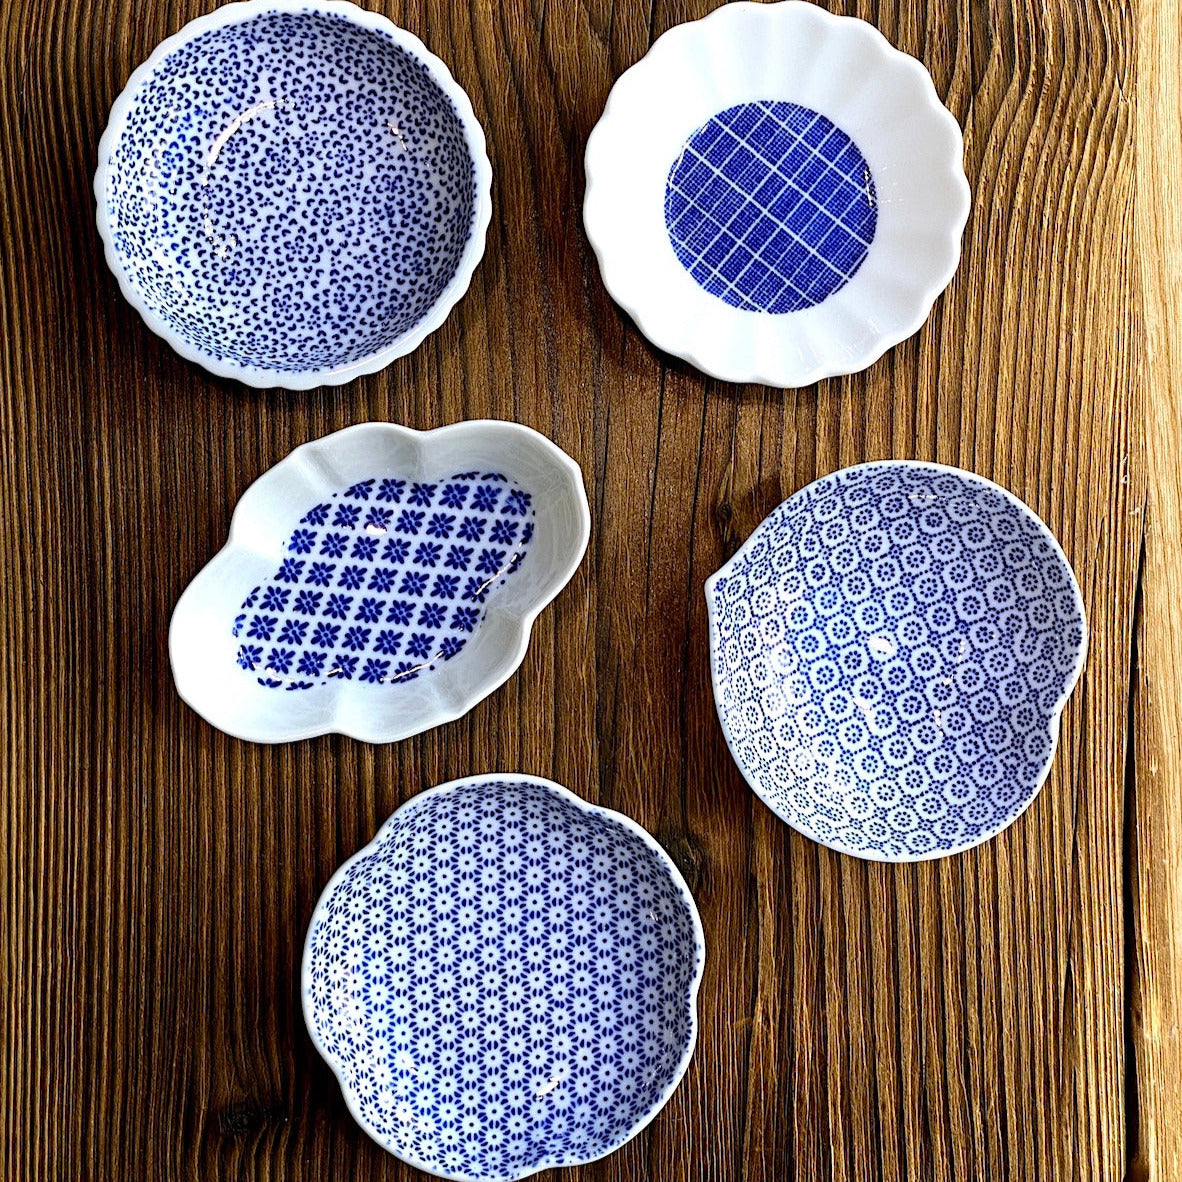 AZMAYA - Schälchen Ume aus Porzellan Blau | Designhandwerk aus Japan